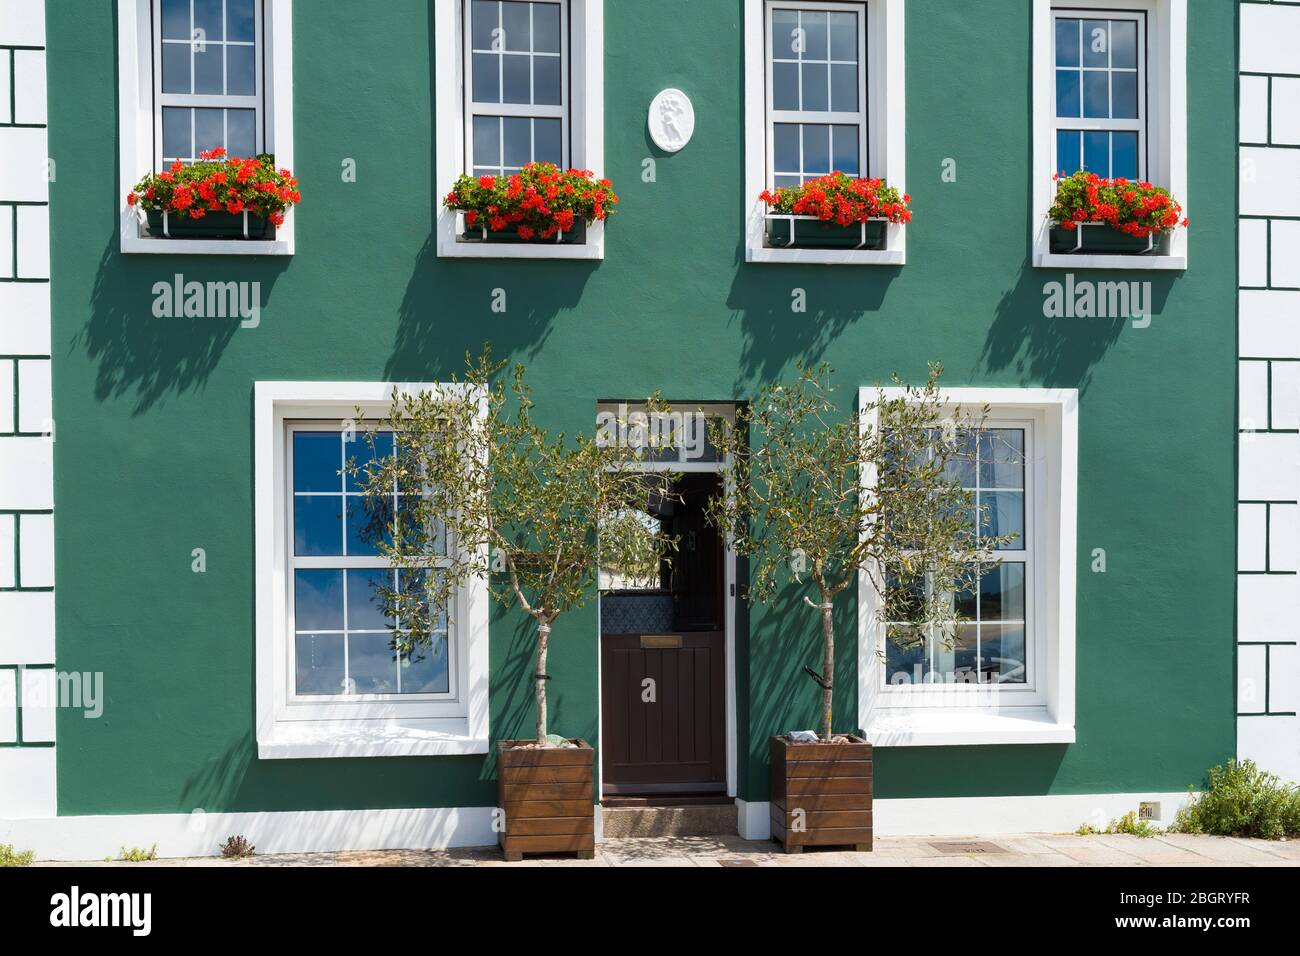 Elegante casa junto al puerto con par de olivos y geranios en cajas de ventanas frente al mar en Gorey, Jersey, Channel Iles Foto de stock